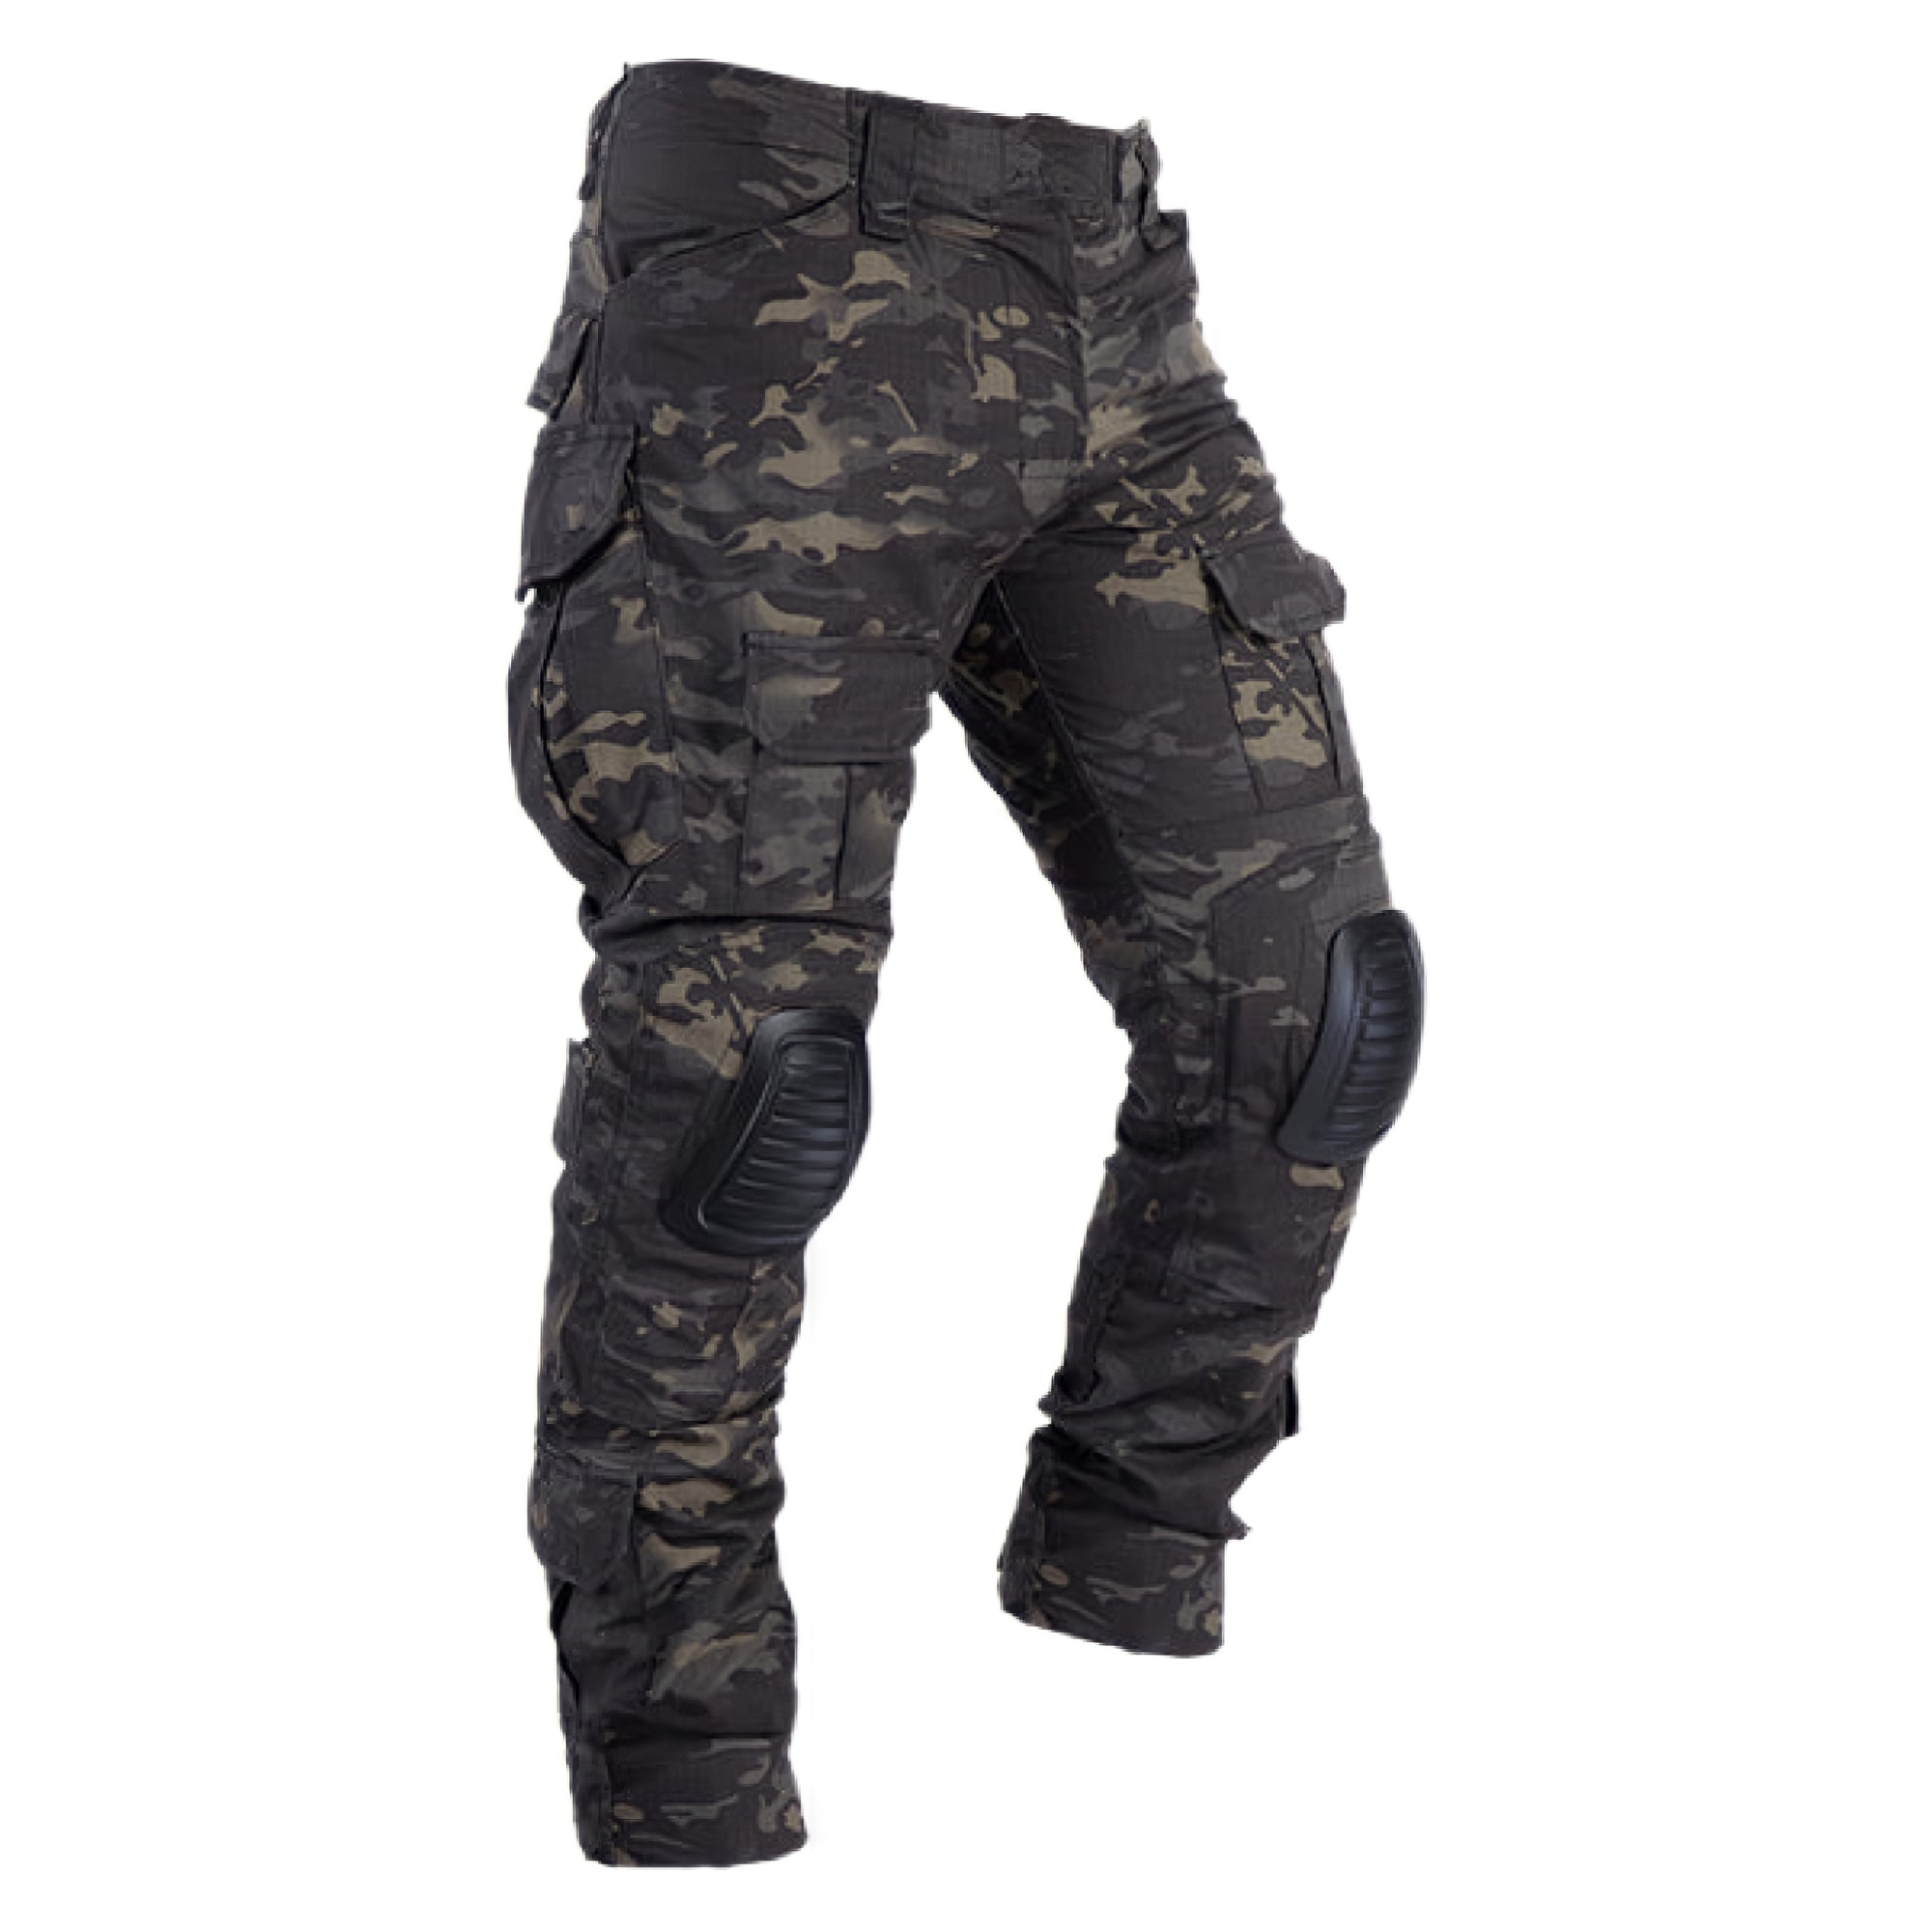 GEN2 Multicam Black Combat Tactical Pants With Knee Pads - FROGMANGLOBAL